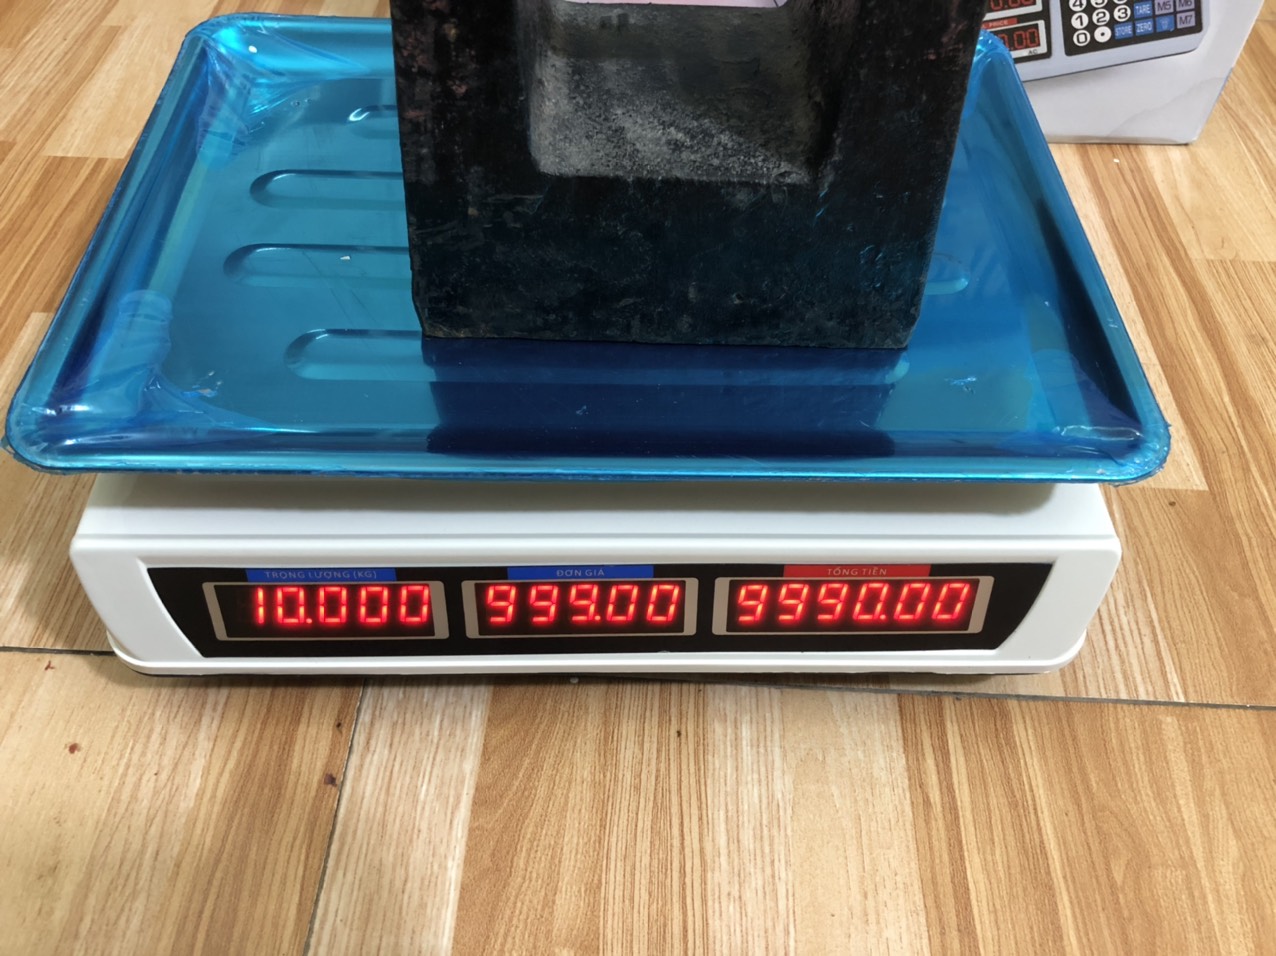 Cân Tính Tiền 30kg/40kg - Cân Điện Tử Cao Cấp Đài Loan. Màn Hình Hiển Thị 2 Mặt